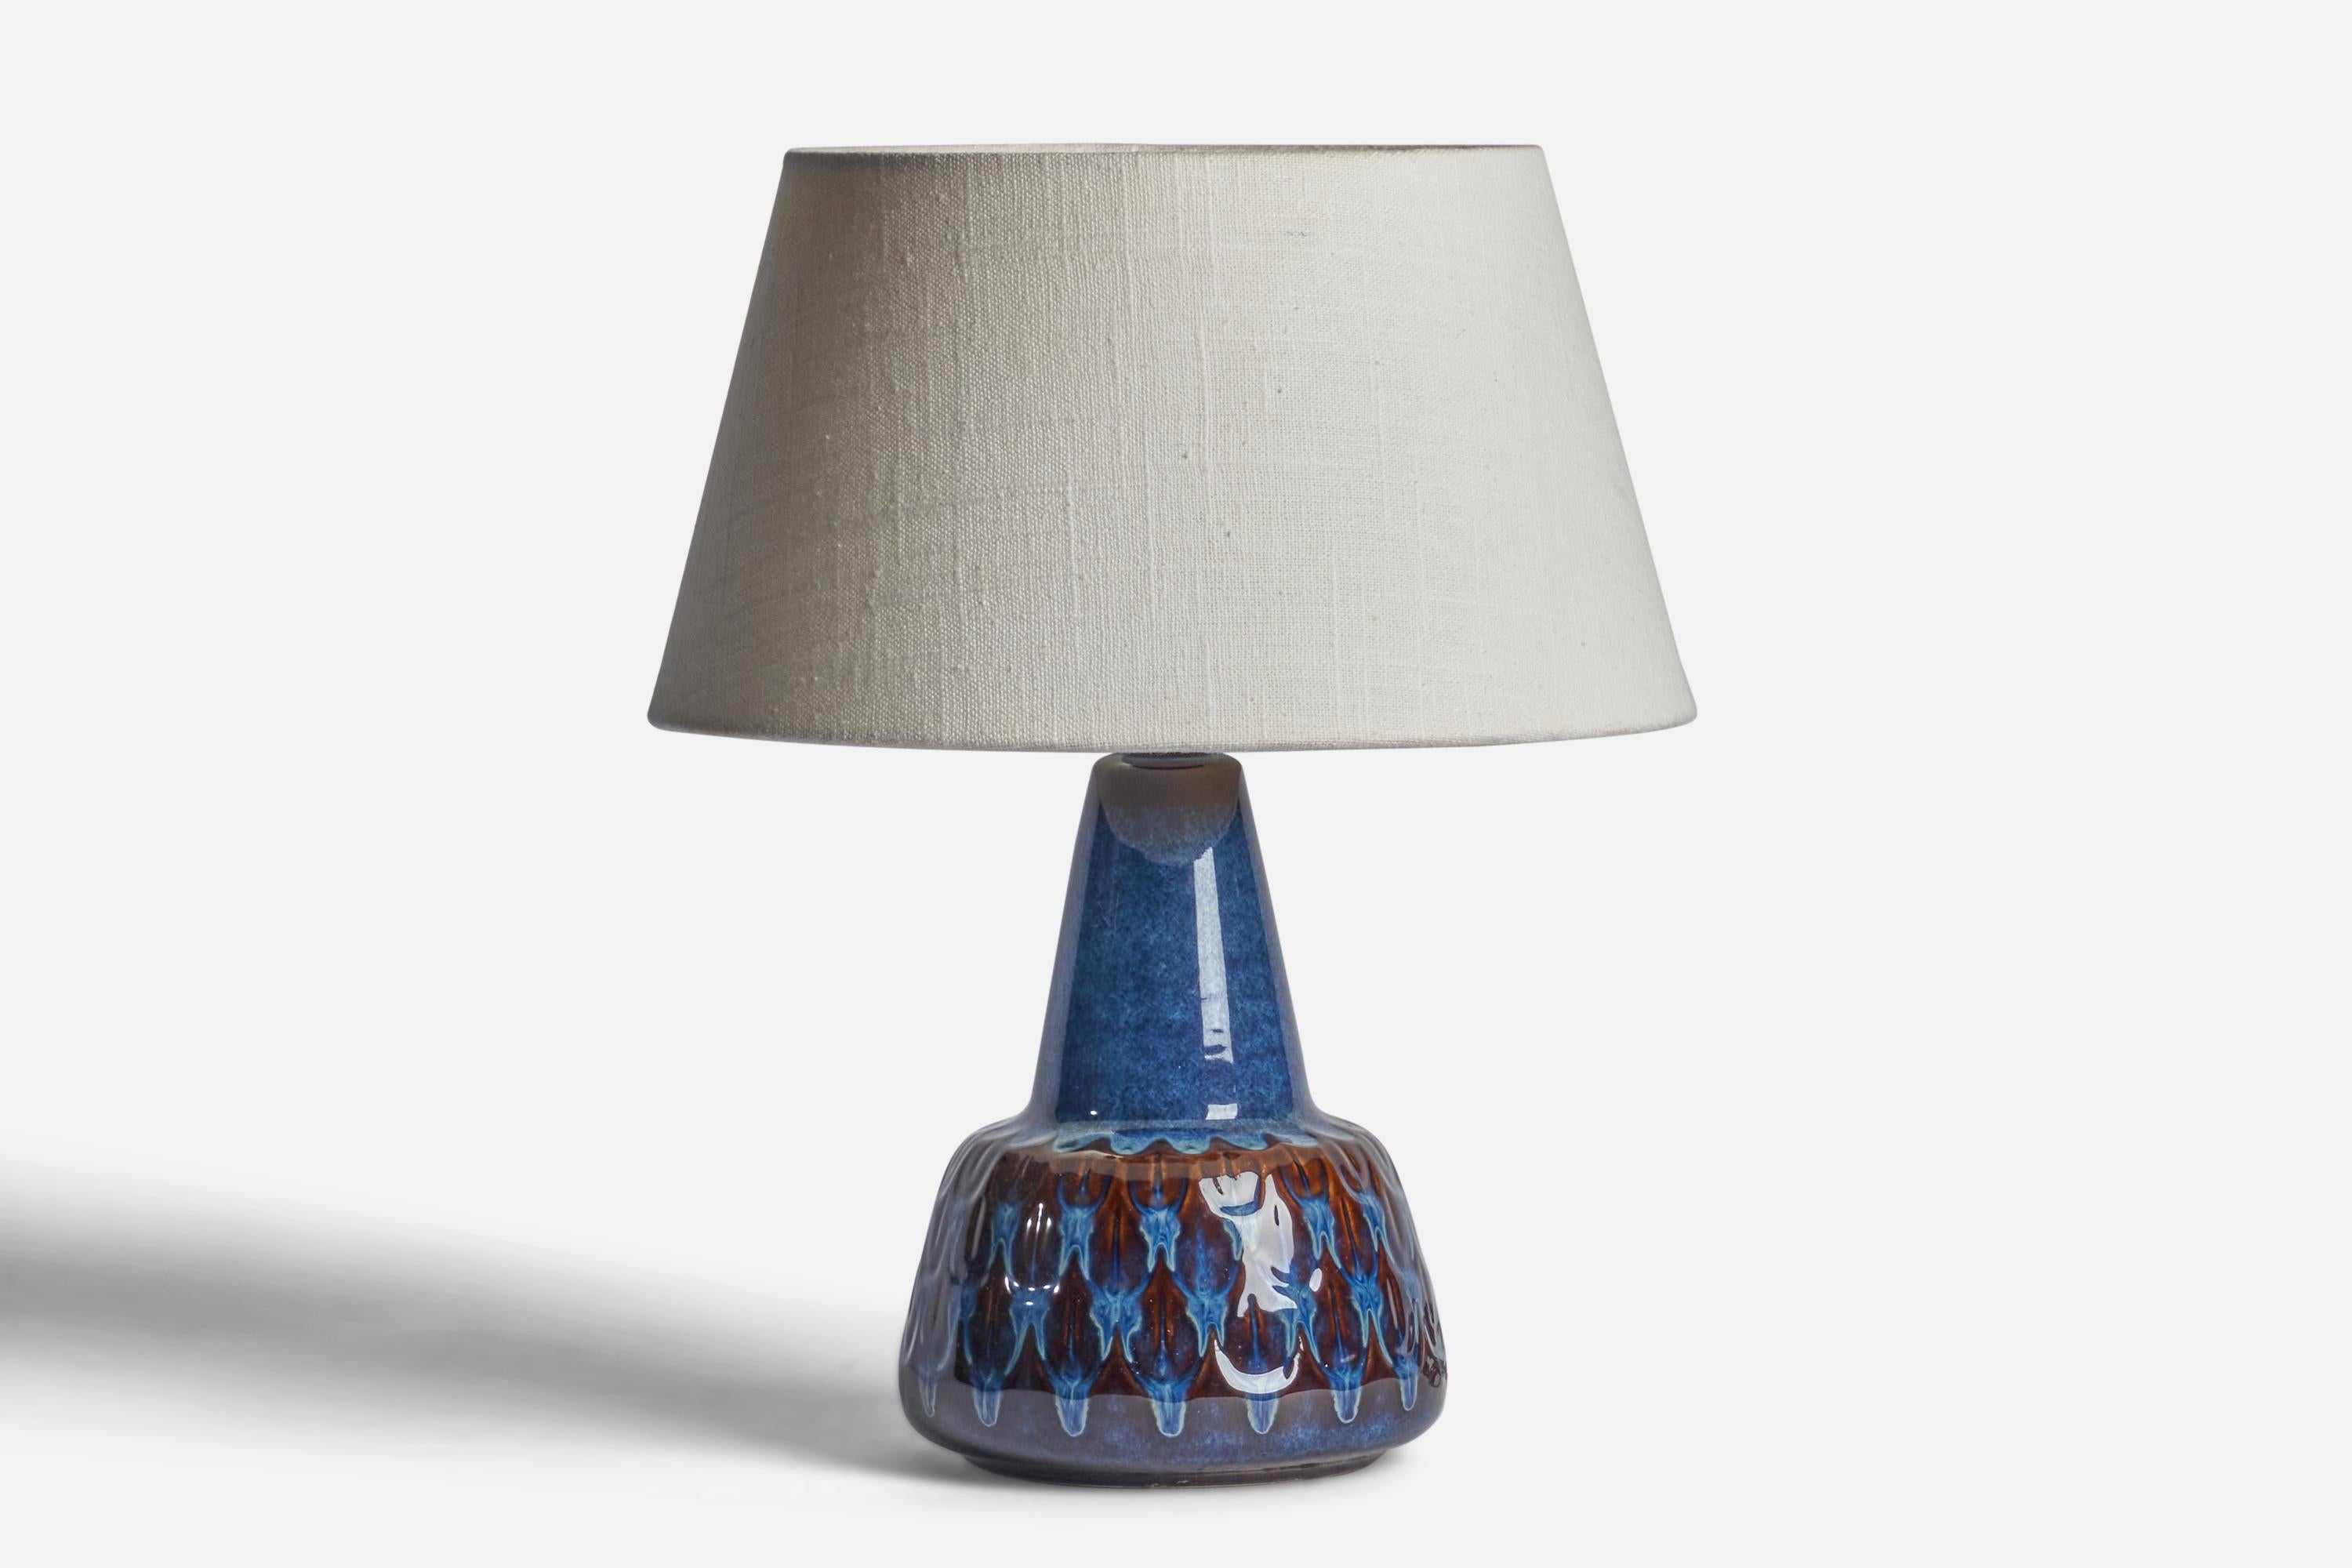 Lampe de table en grès émaillé bleu, conçue et produite par Søholm, Bornholm, Danemark, années 1960.

Dimensions de la lampe (pouces) : 9.75